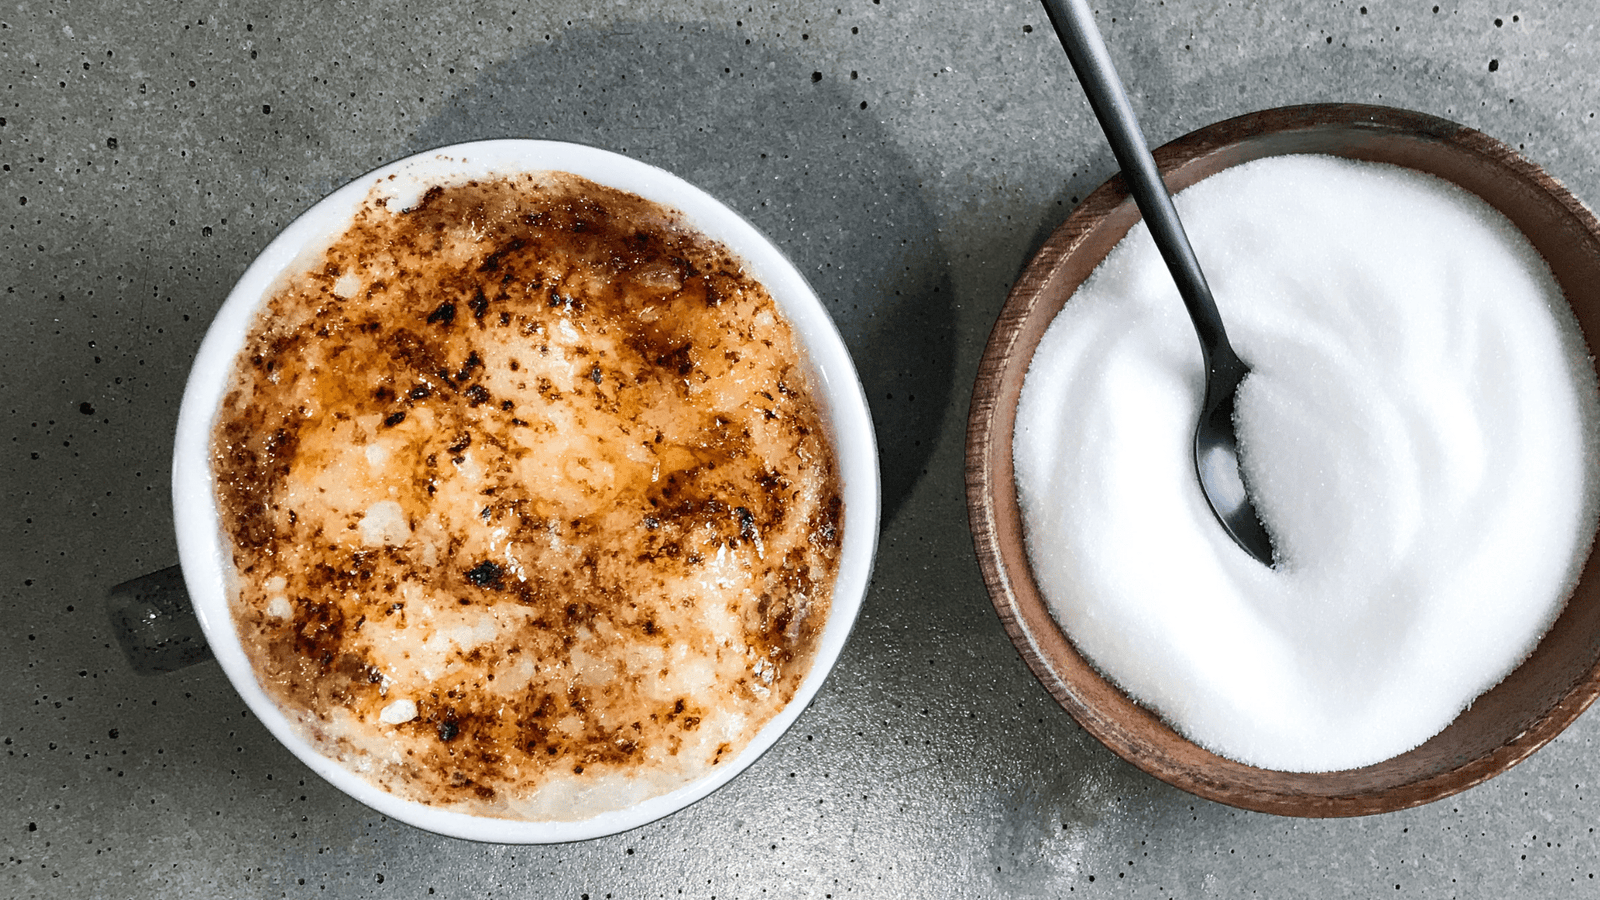 Cappuccino: comment en faire un bon? Dosages, astuces & recettes.